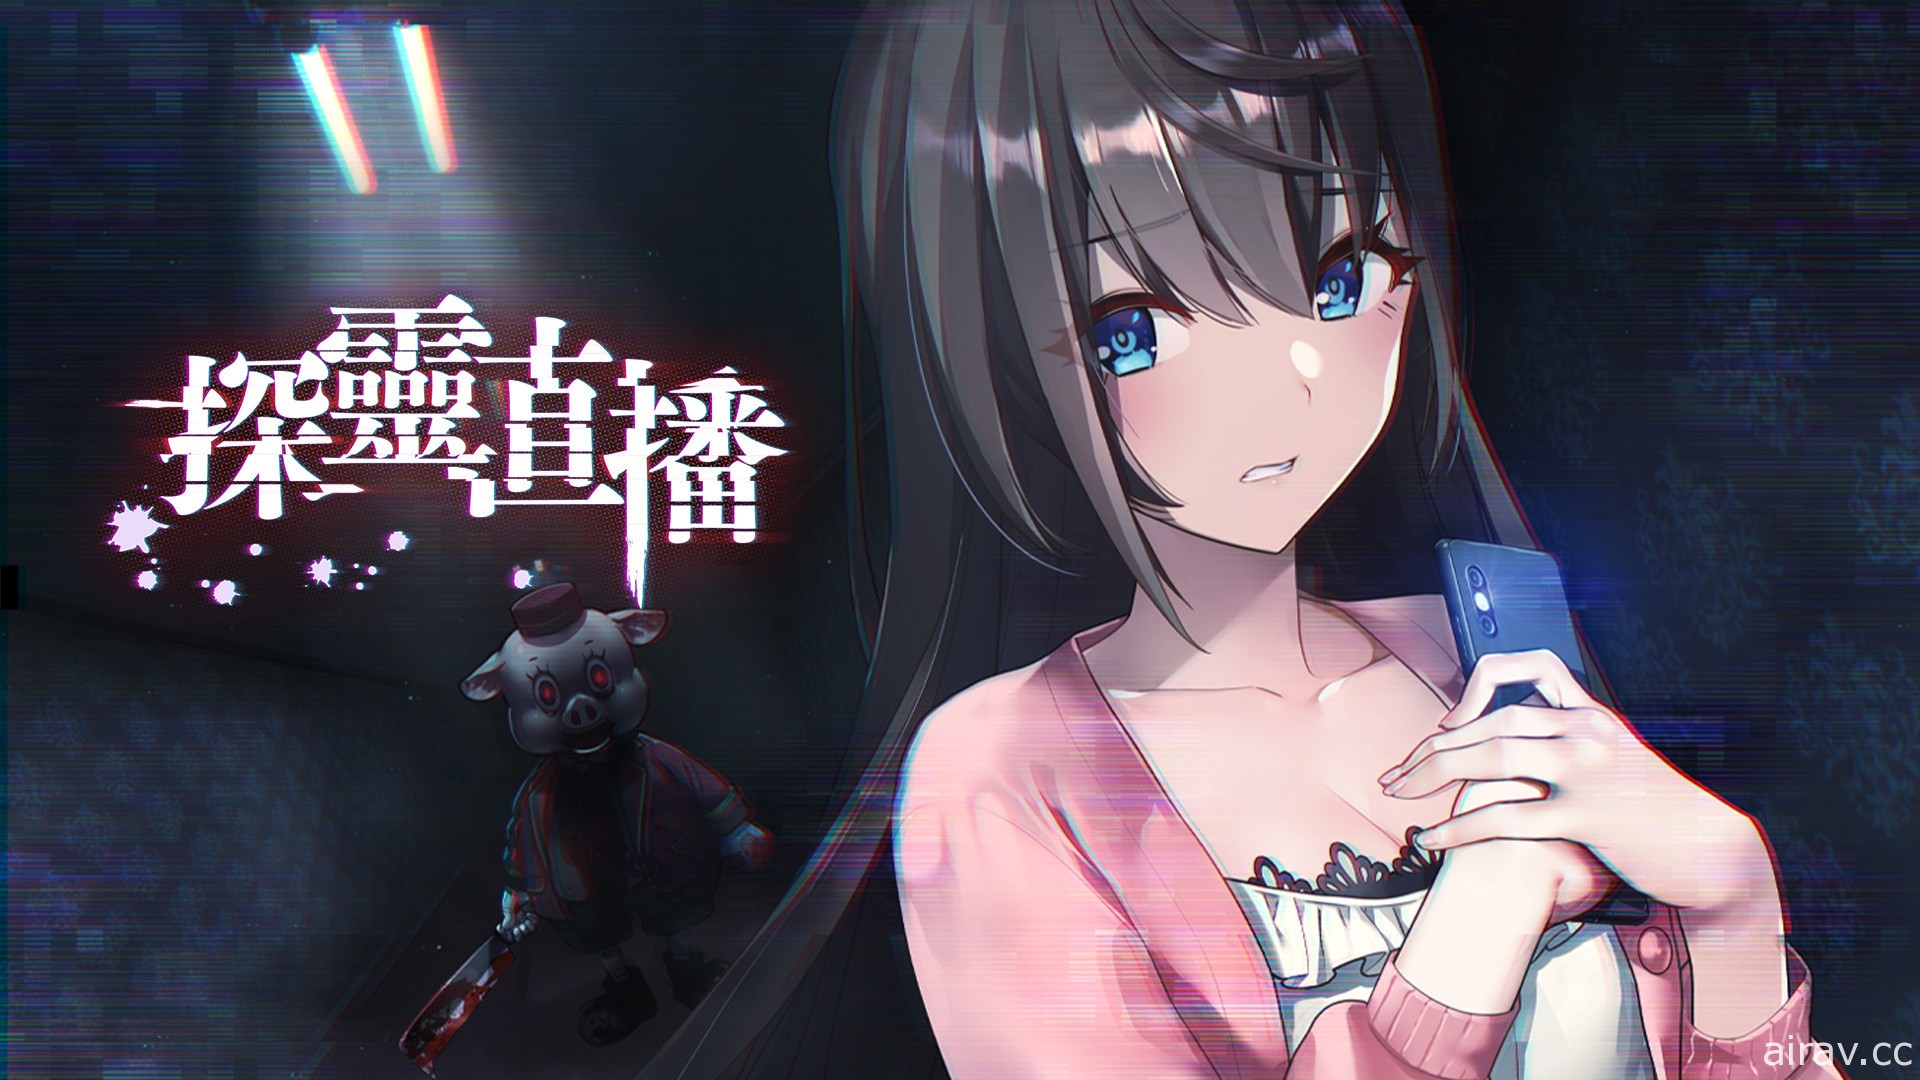 美少女生存恐怖冒险游戏《探灵直播》Switch 中文版预定 12 月 16 日上市